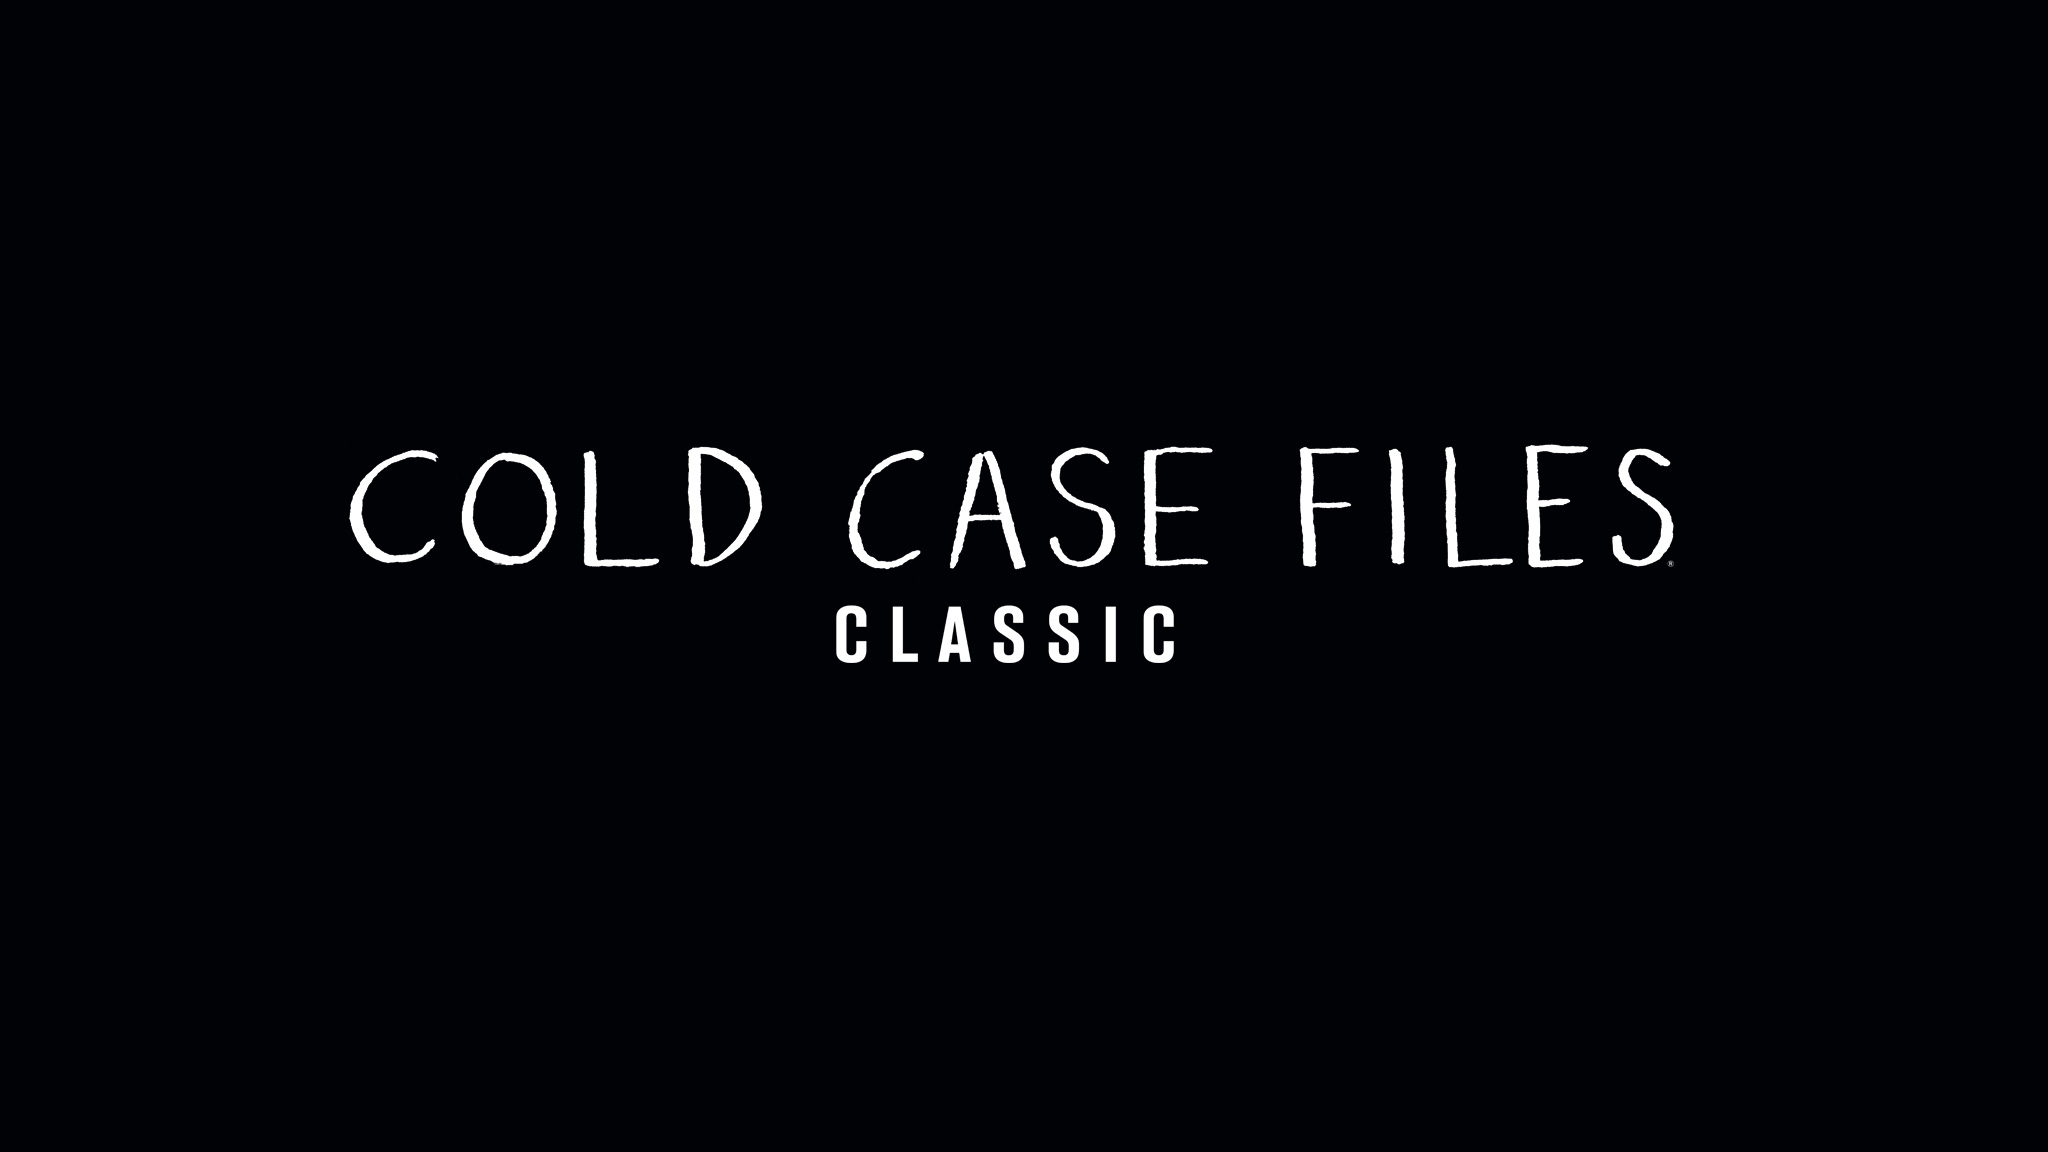 Cold Case Files Classic